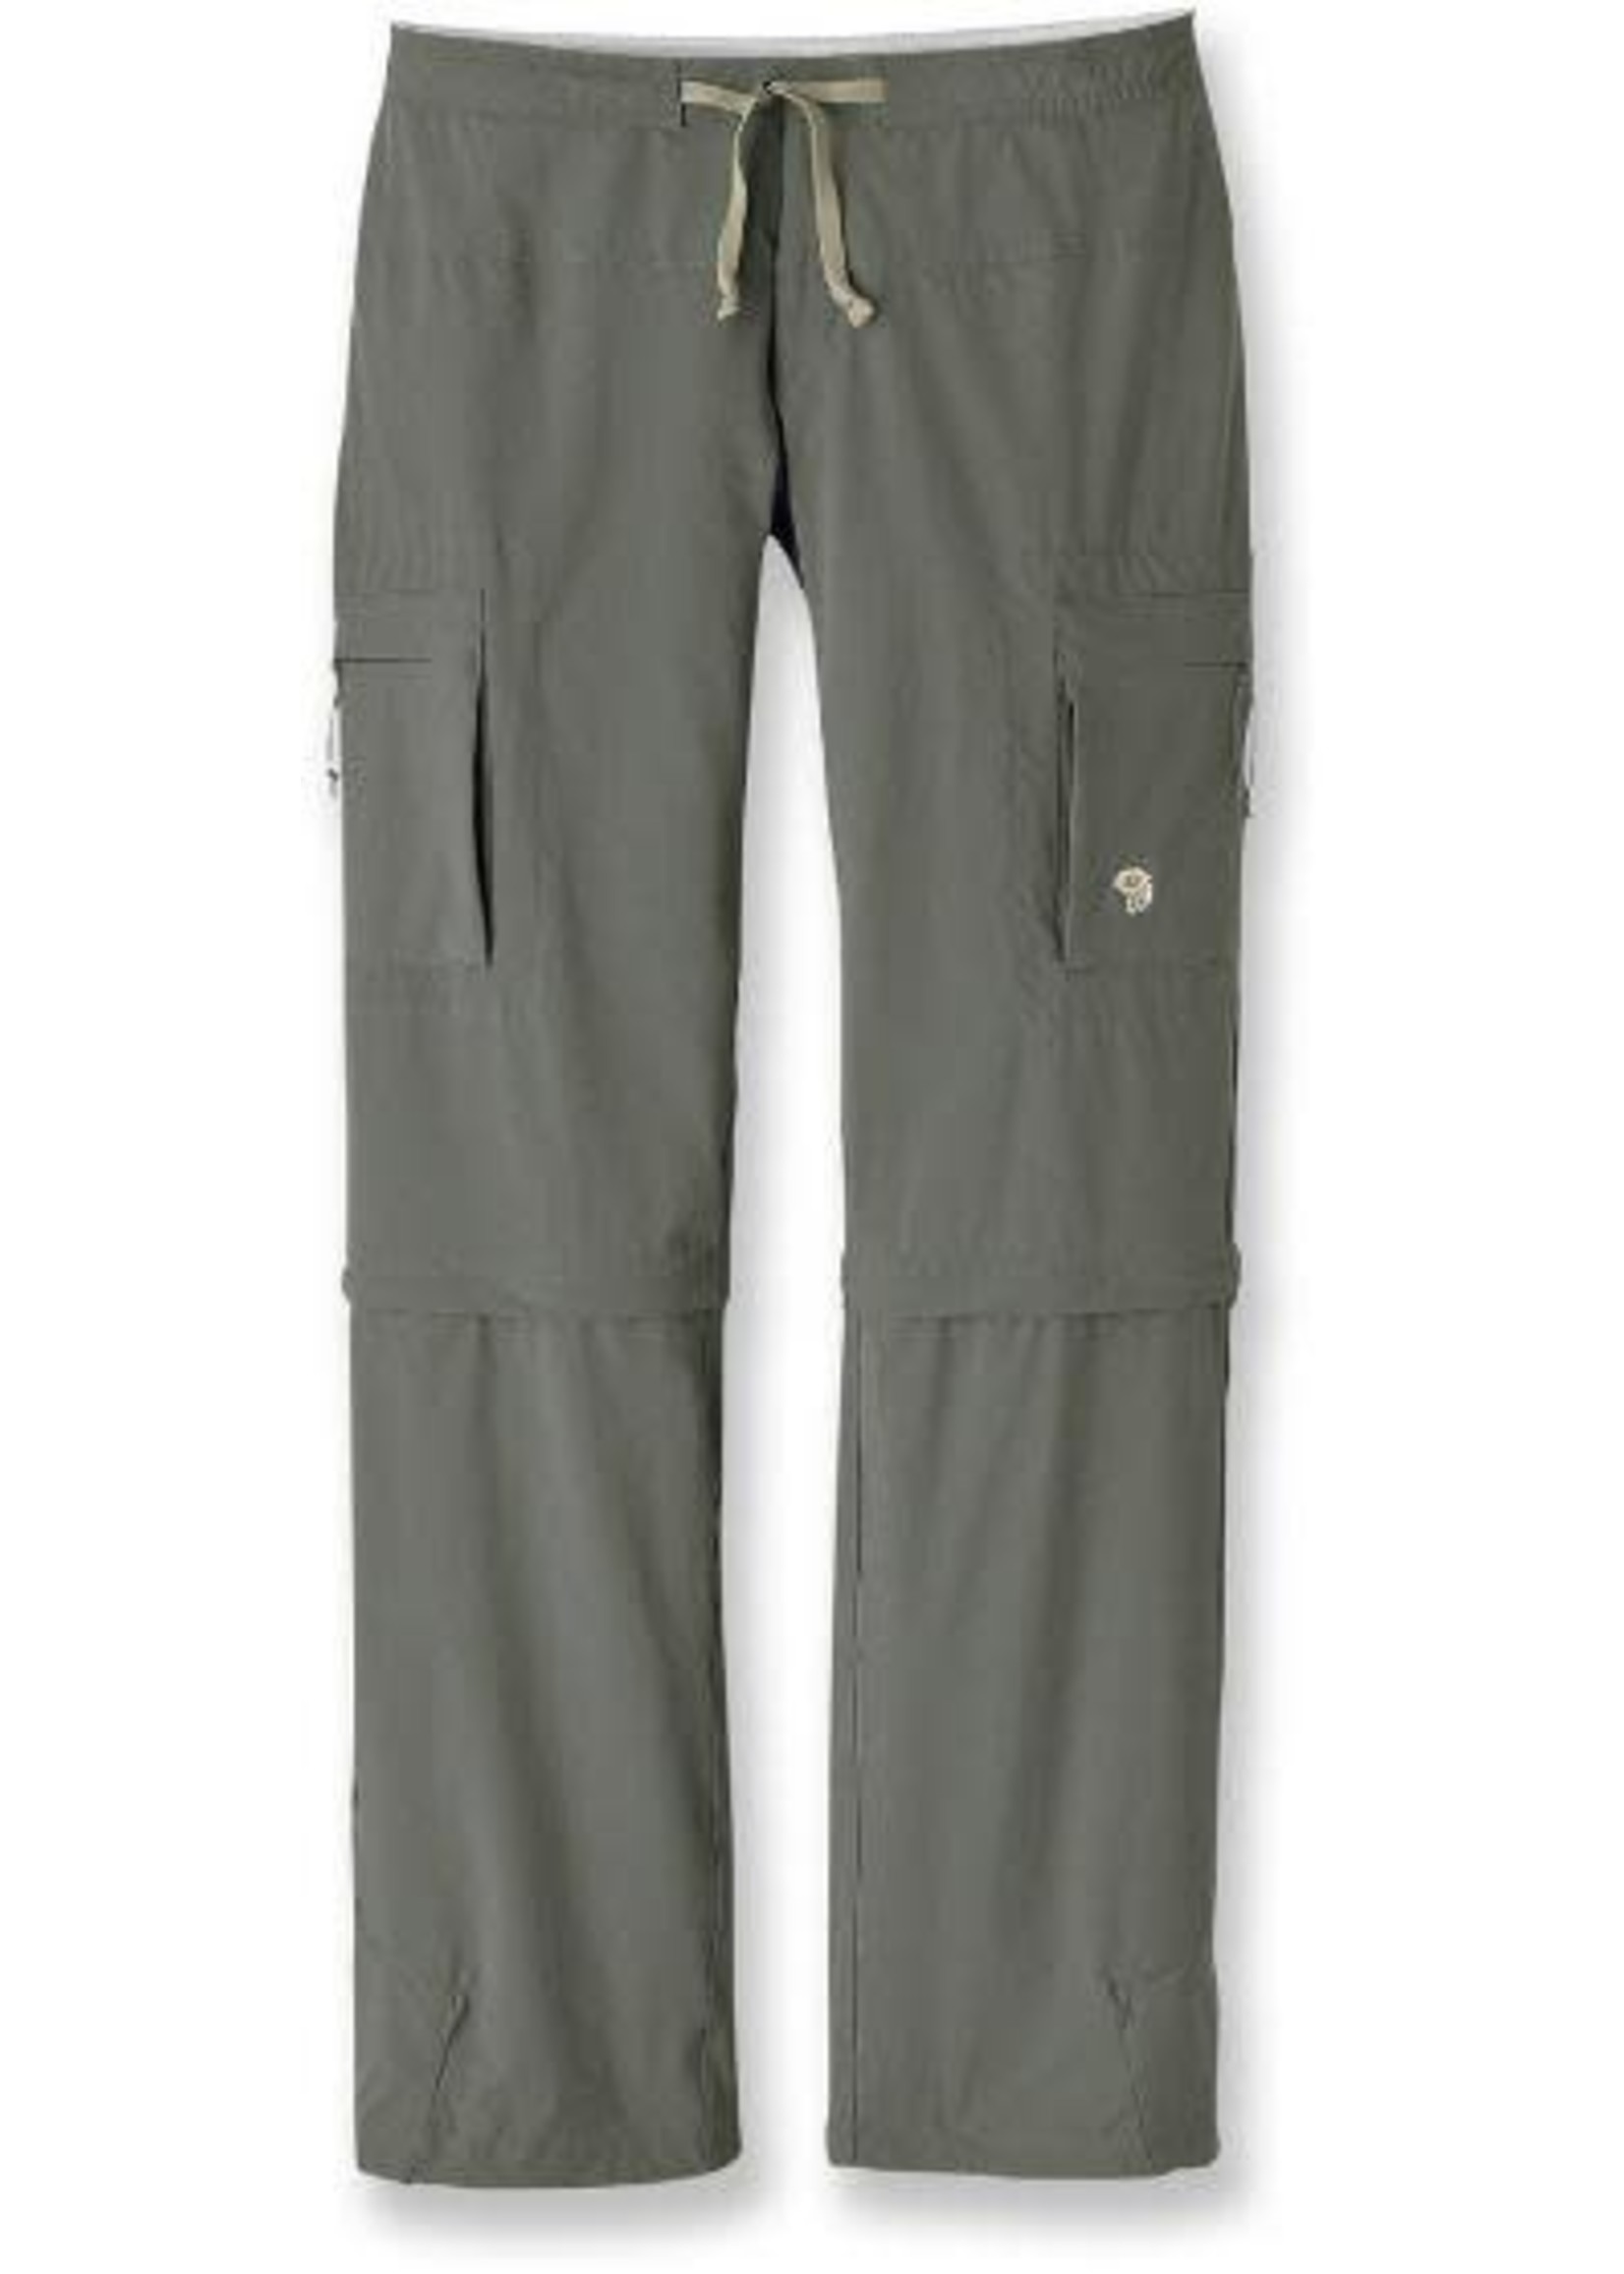 Mountain Hardwear Pantalons Yuma Convertible pour femmes